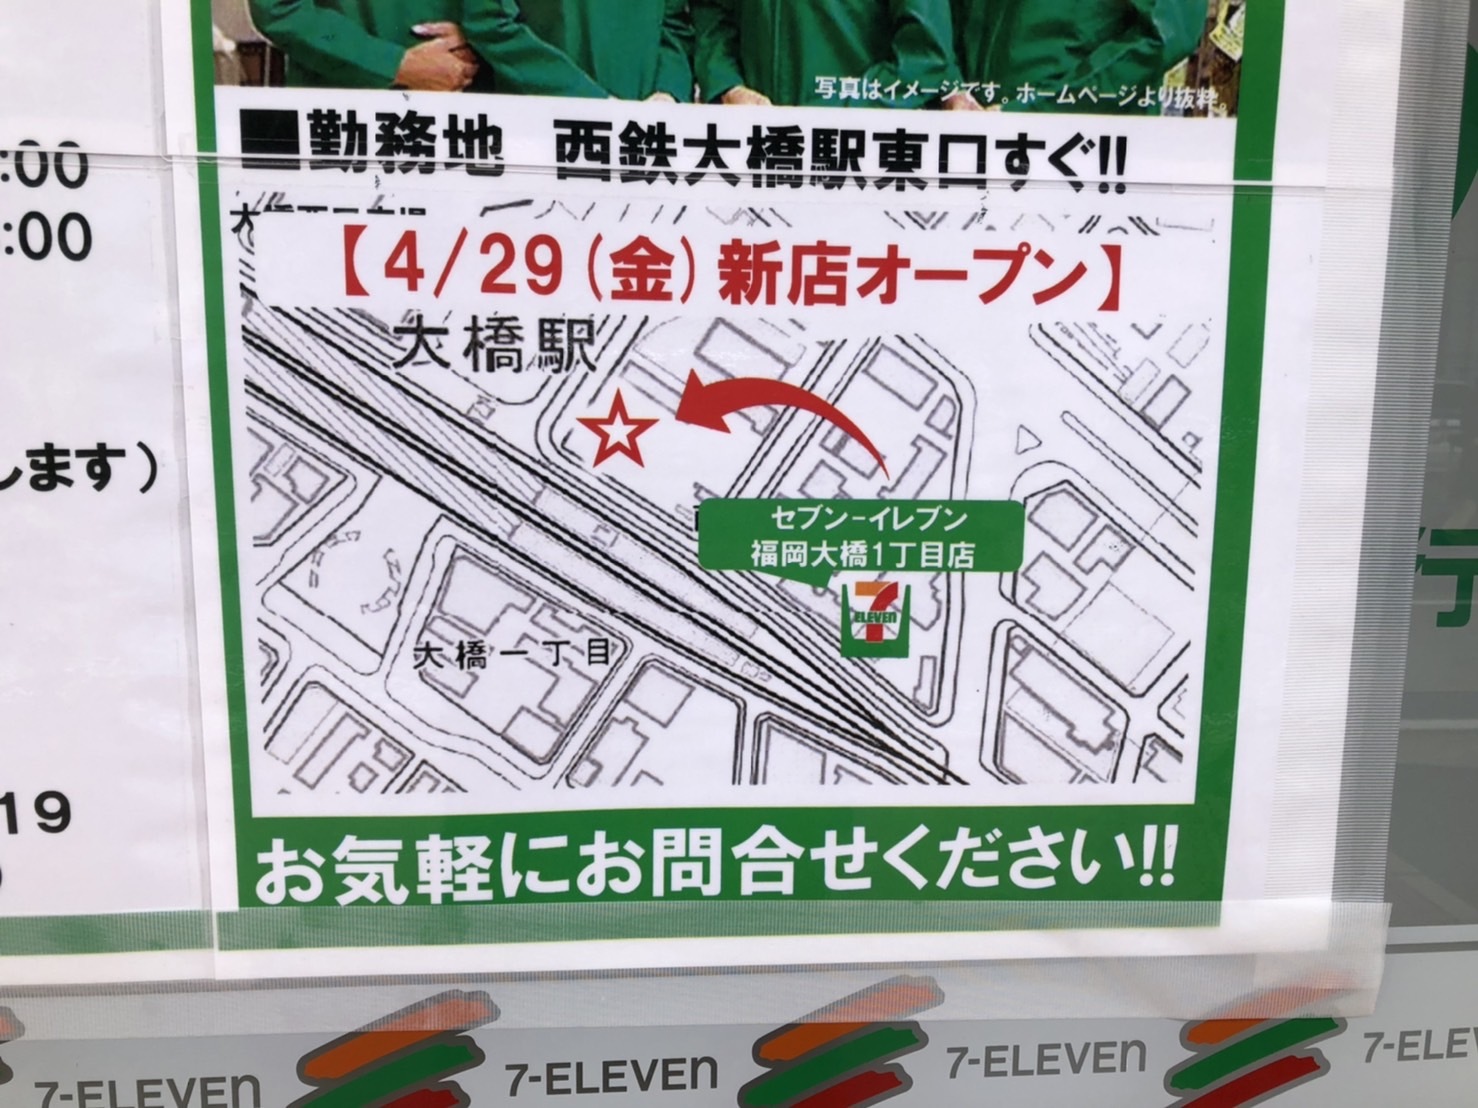 「セブン-イレブン大橋1丁目店」の店頭に貼ってあった「求人募集チラシ」には移転先地図が。